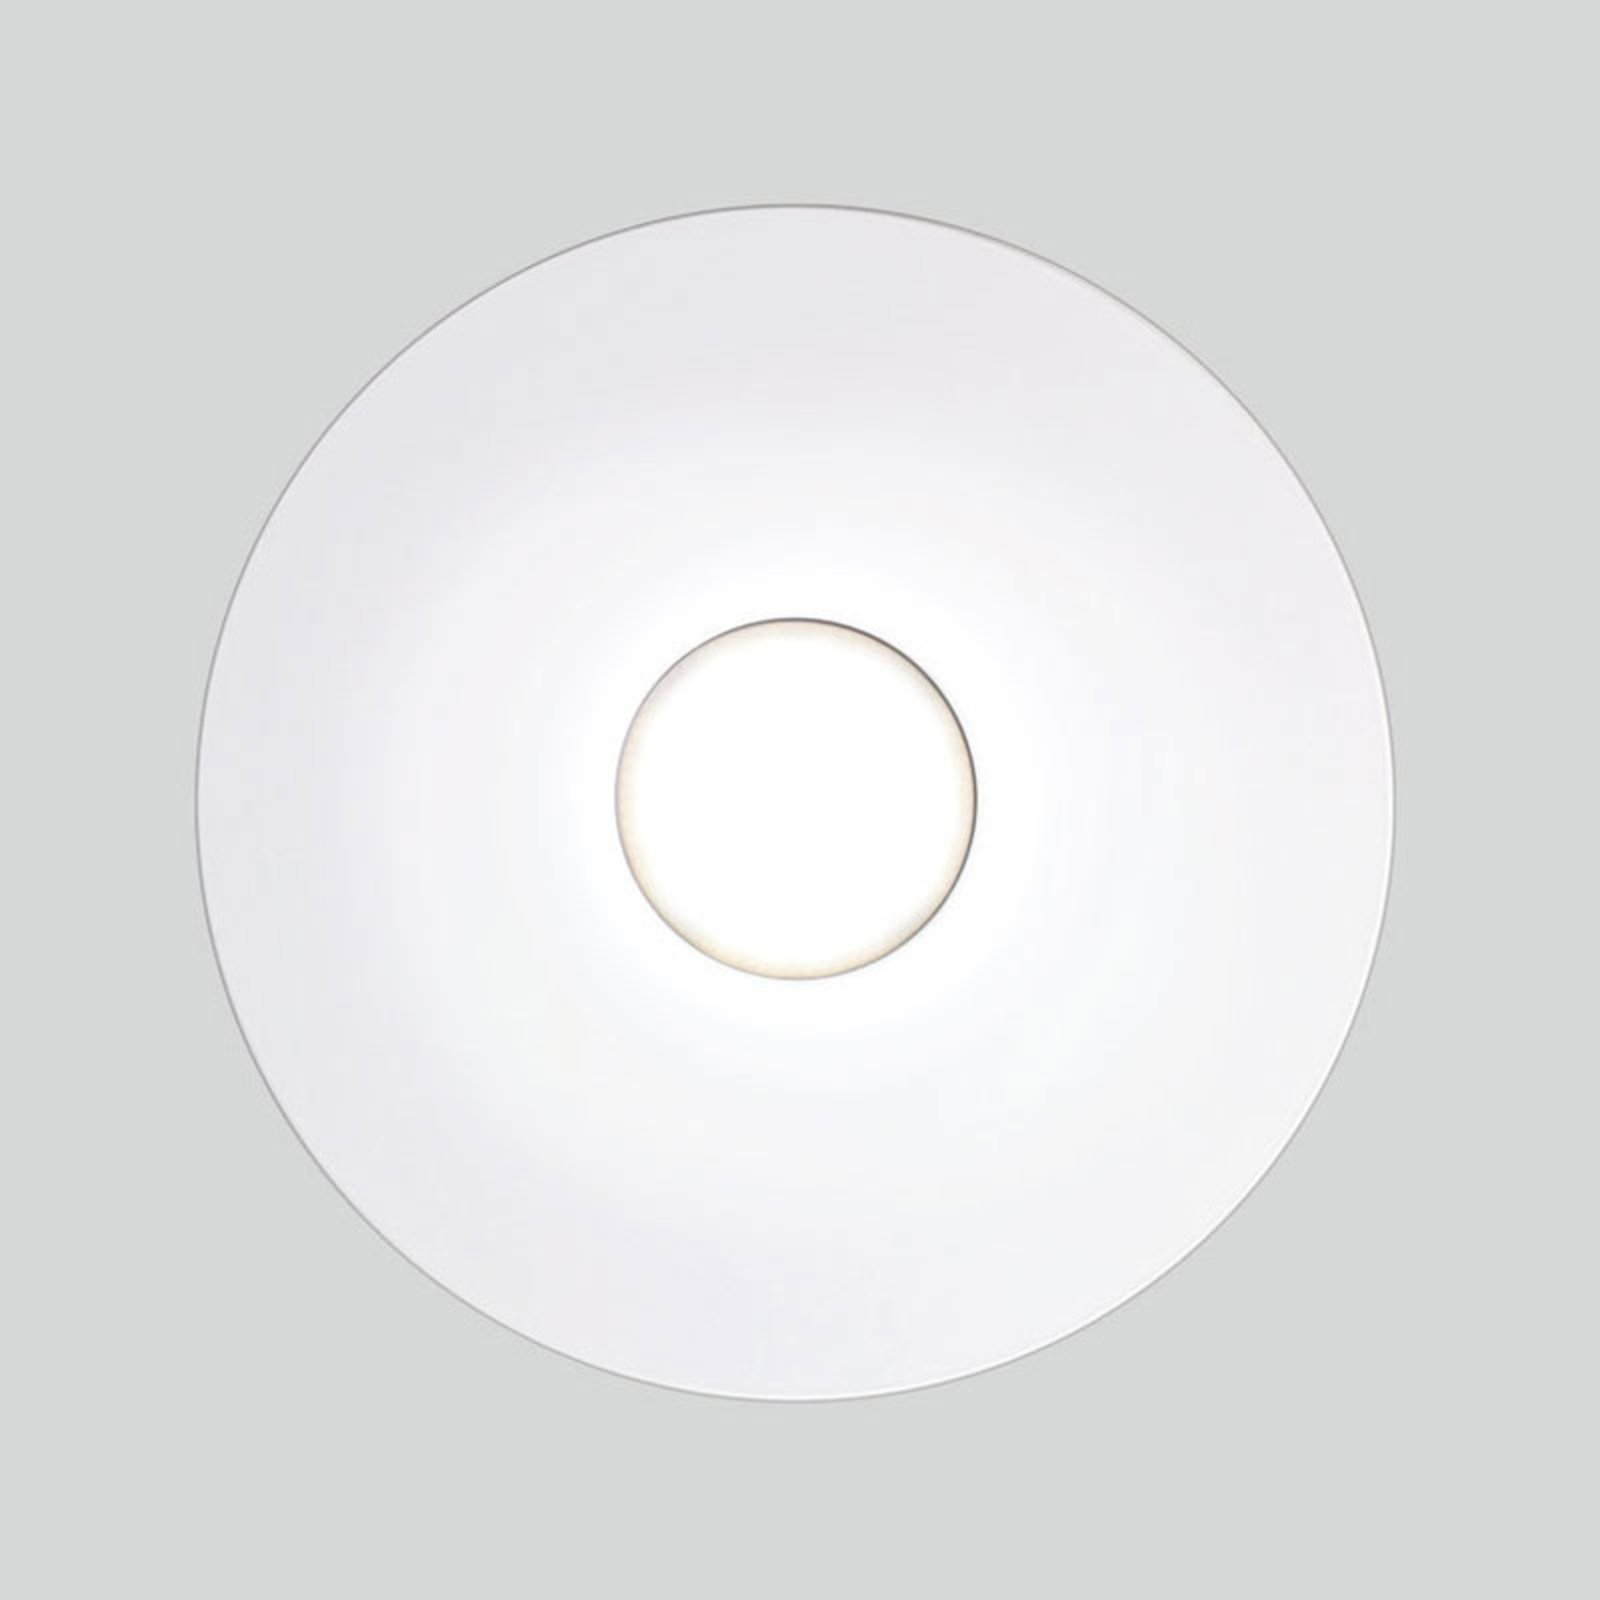 Stenska svetilka LED Circle, bela, z enim plamenom, z možnostjo zatemnitve